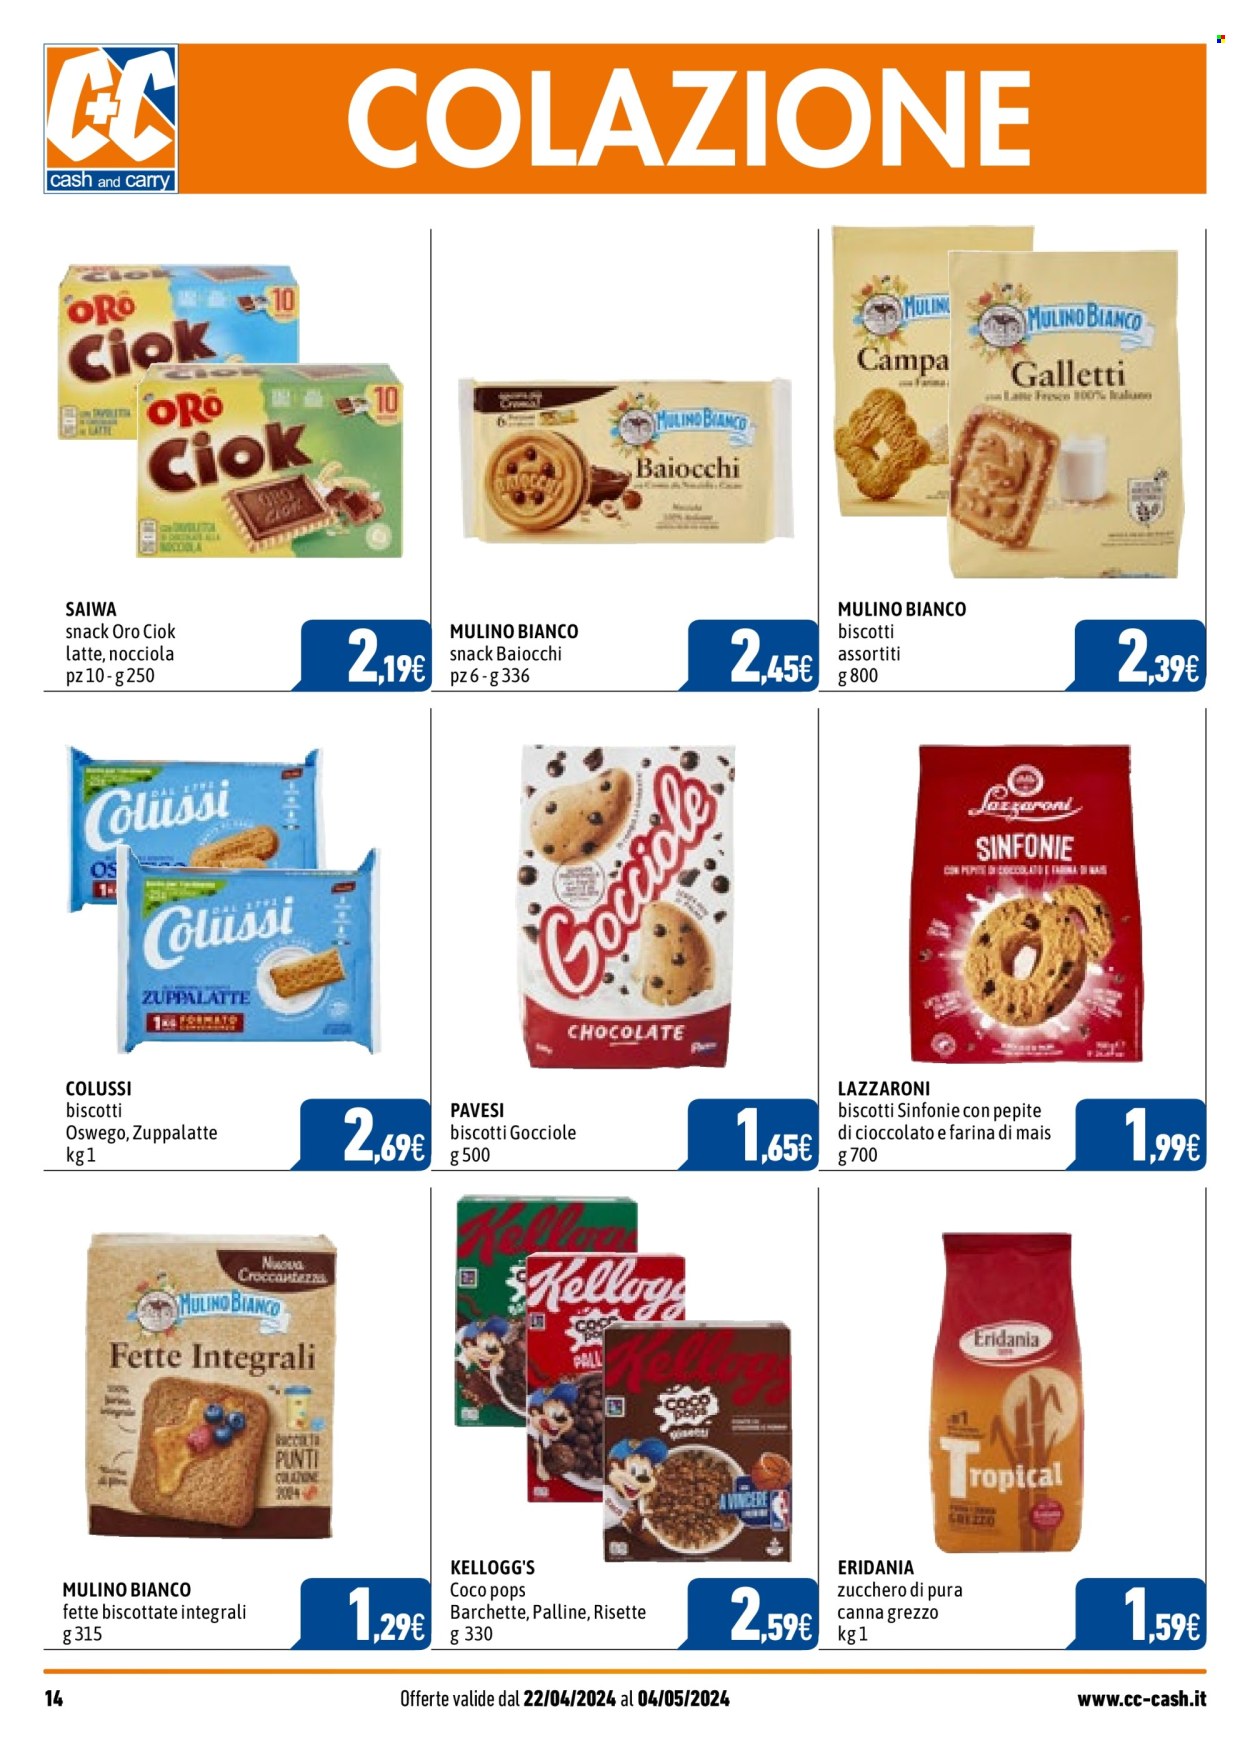 thumbnail - Volantino C+C Cash & Carry - 22/4/2024 - 4/5/2024 - Prodotti in offerta - fette biscottate, risette, Mulino Bianco, latte, biscotti, biscotti baiocchi, Pavesi, farina di mais, zucchero, zucchero di canna, cereali, Kellogg's. Pagina 14.